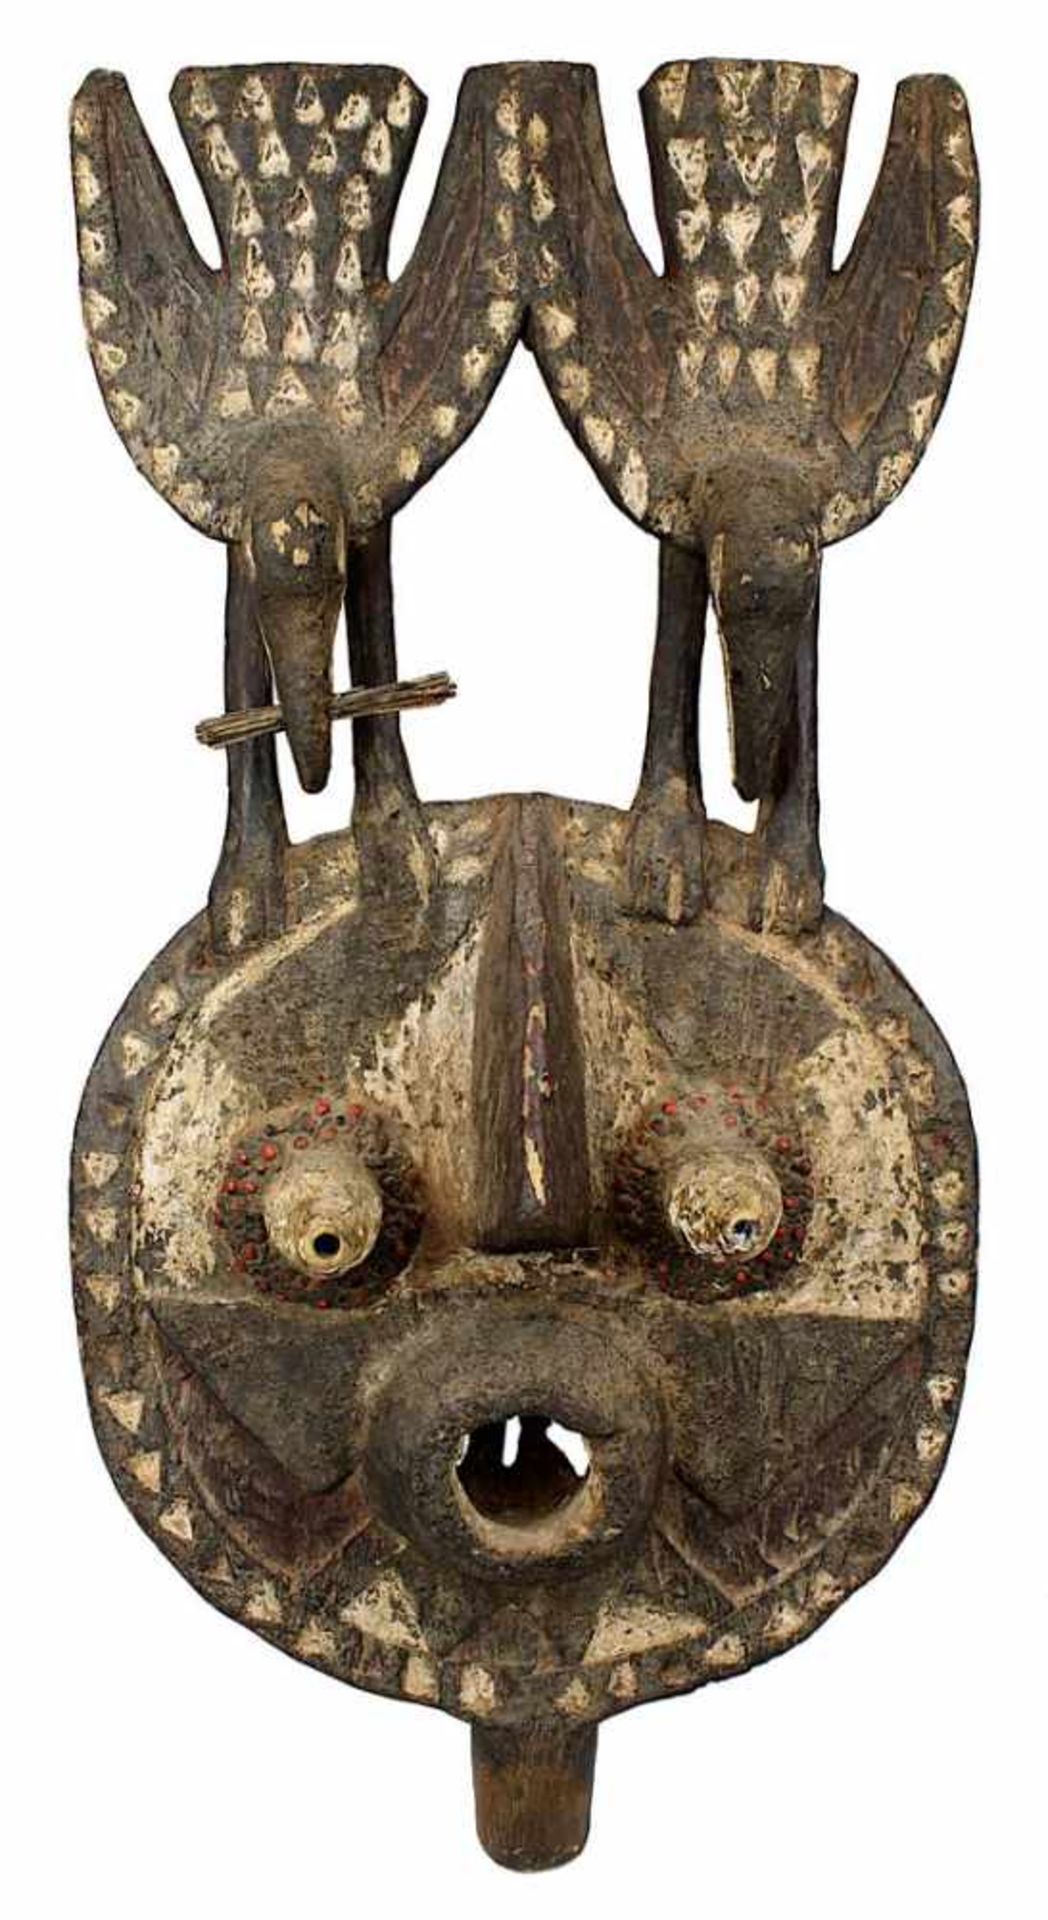 Ältere Maske der Bobo oder Bwa, Mali, helles Holz geschnitzt und dunkel gefärbt, Schauseite als